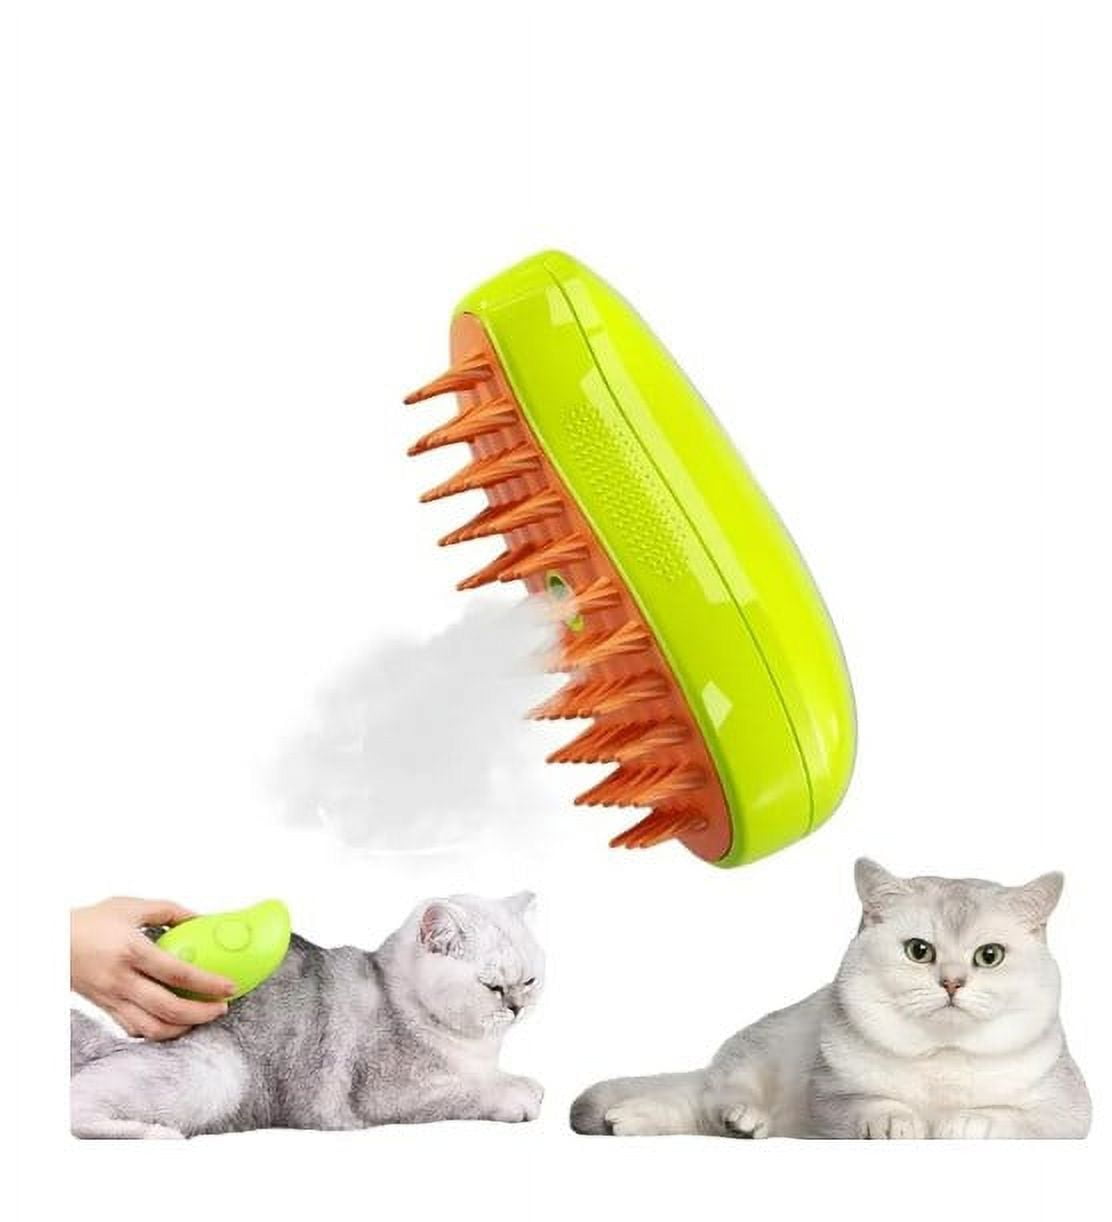 Cat Brush 3 In1 Cat Steamy Brush Self Cleaning Steam Cat - Temu